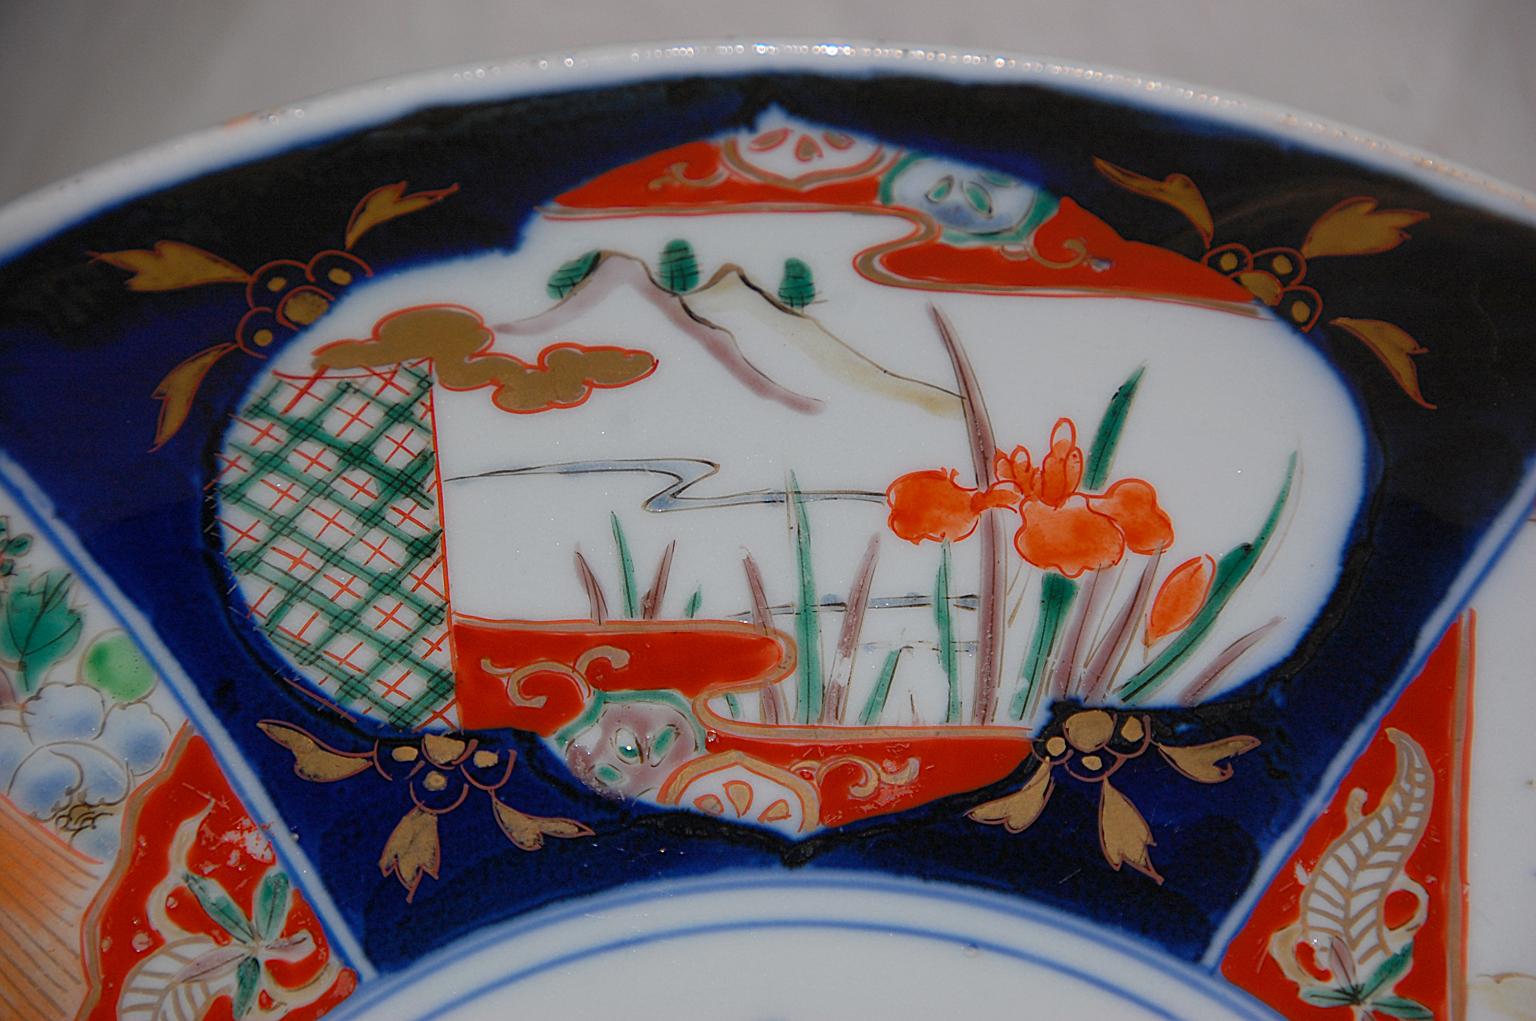 Japanisches Imari-Ladegerät aus dem 19. Jahrhundert, 15 1/2 Zoll, handgemalte Dekoration in Unterglasurblau und Überglasur-Emaille, hervorgehoben durch Blattgold. Diese Meiji-Platte ist recht symmetrisch und mit einem zentralen Blumen- und